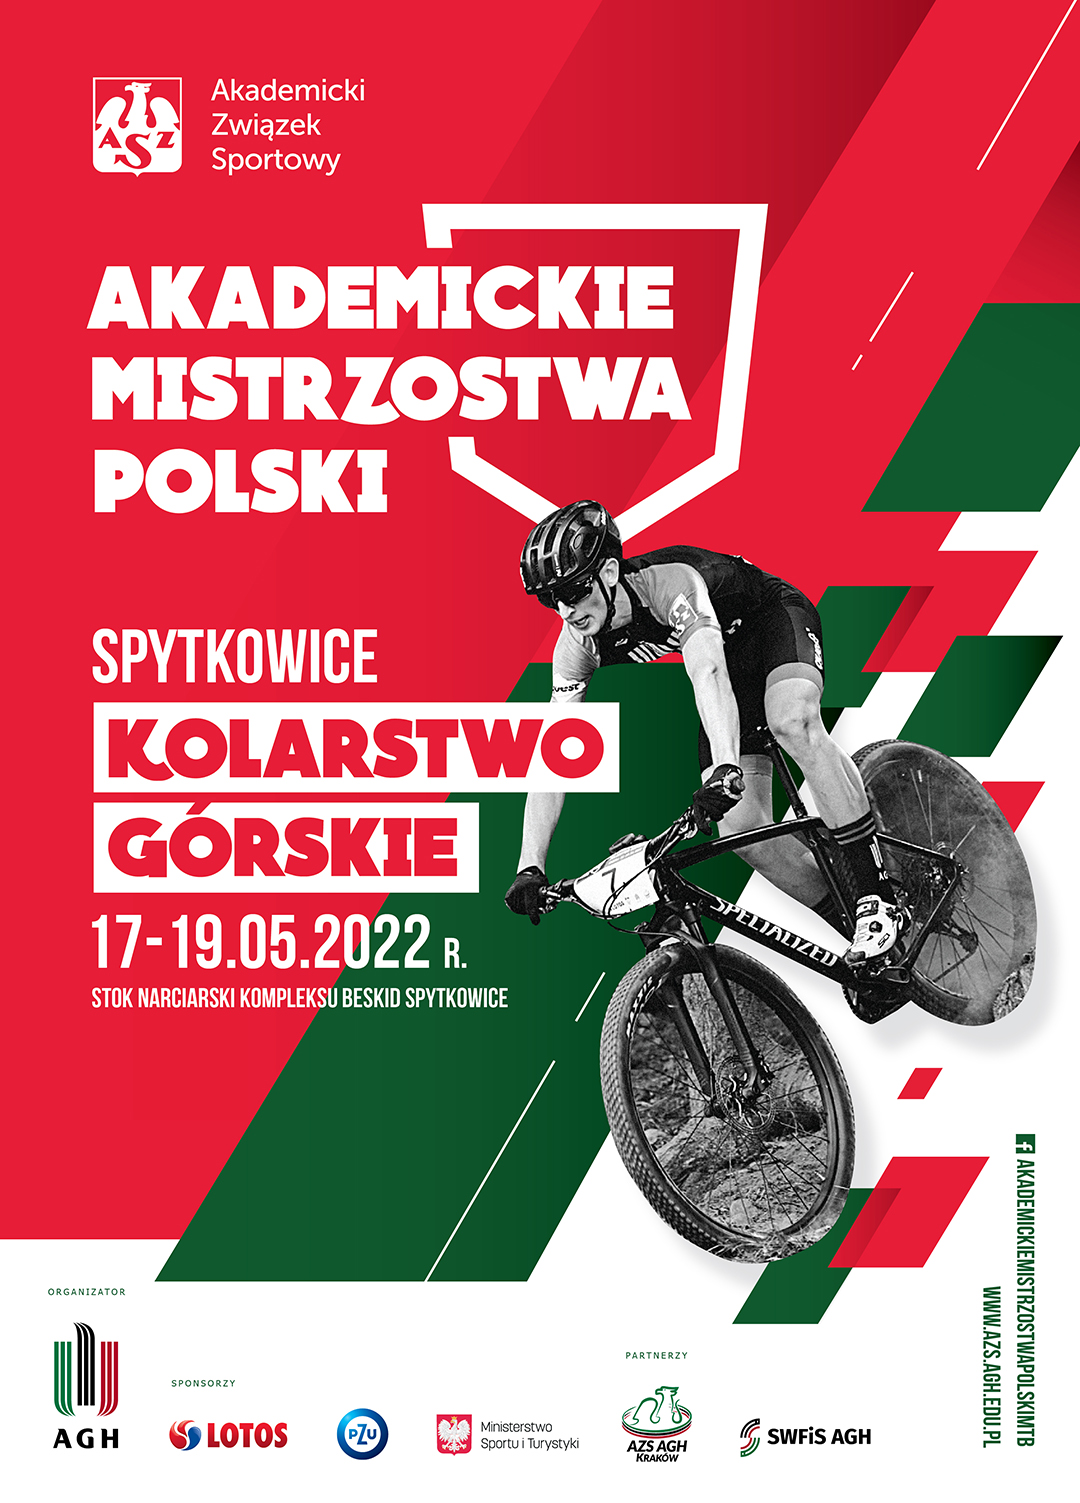 Zapowiedź Akademickich Mistrzostw Polski w kolarstwie górskim 2022